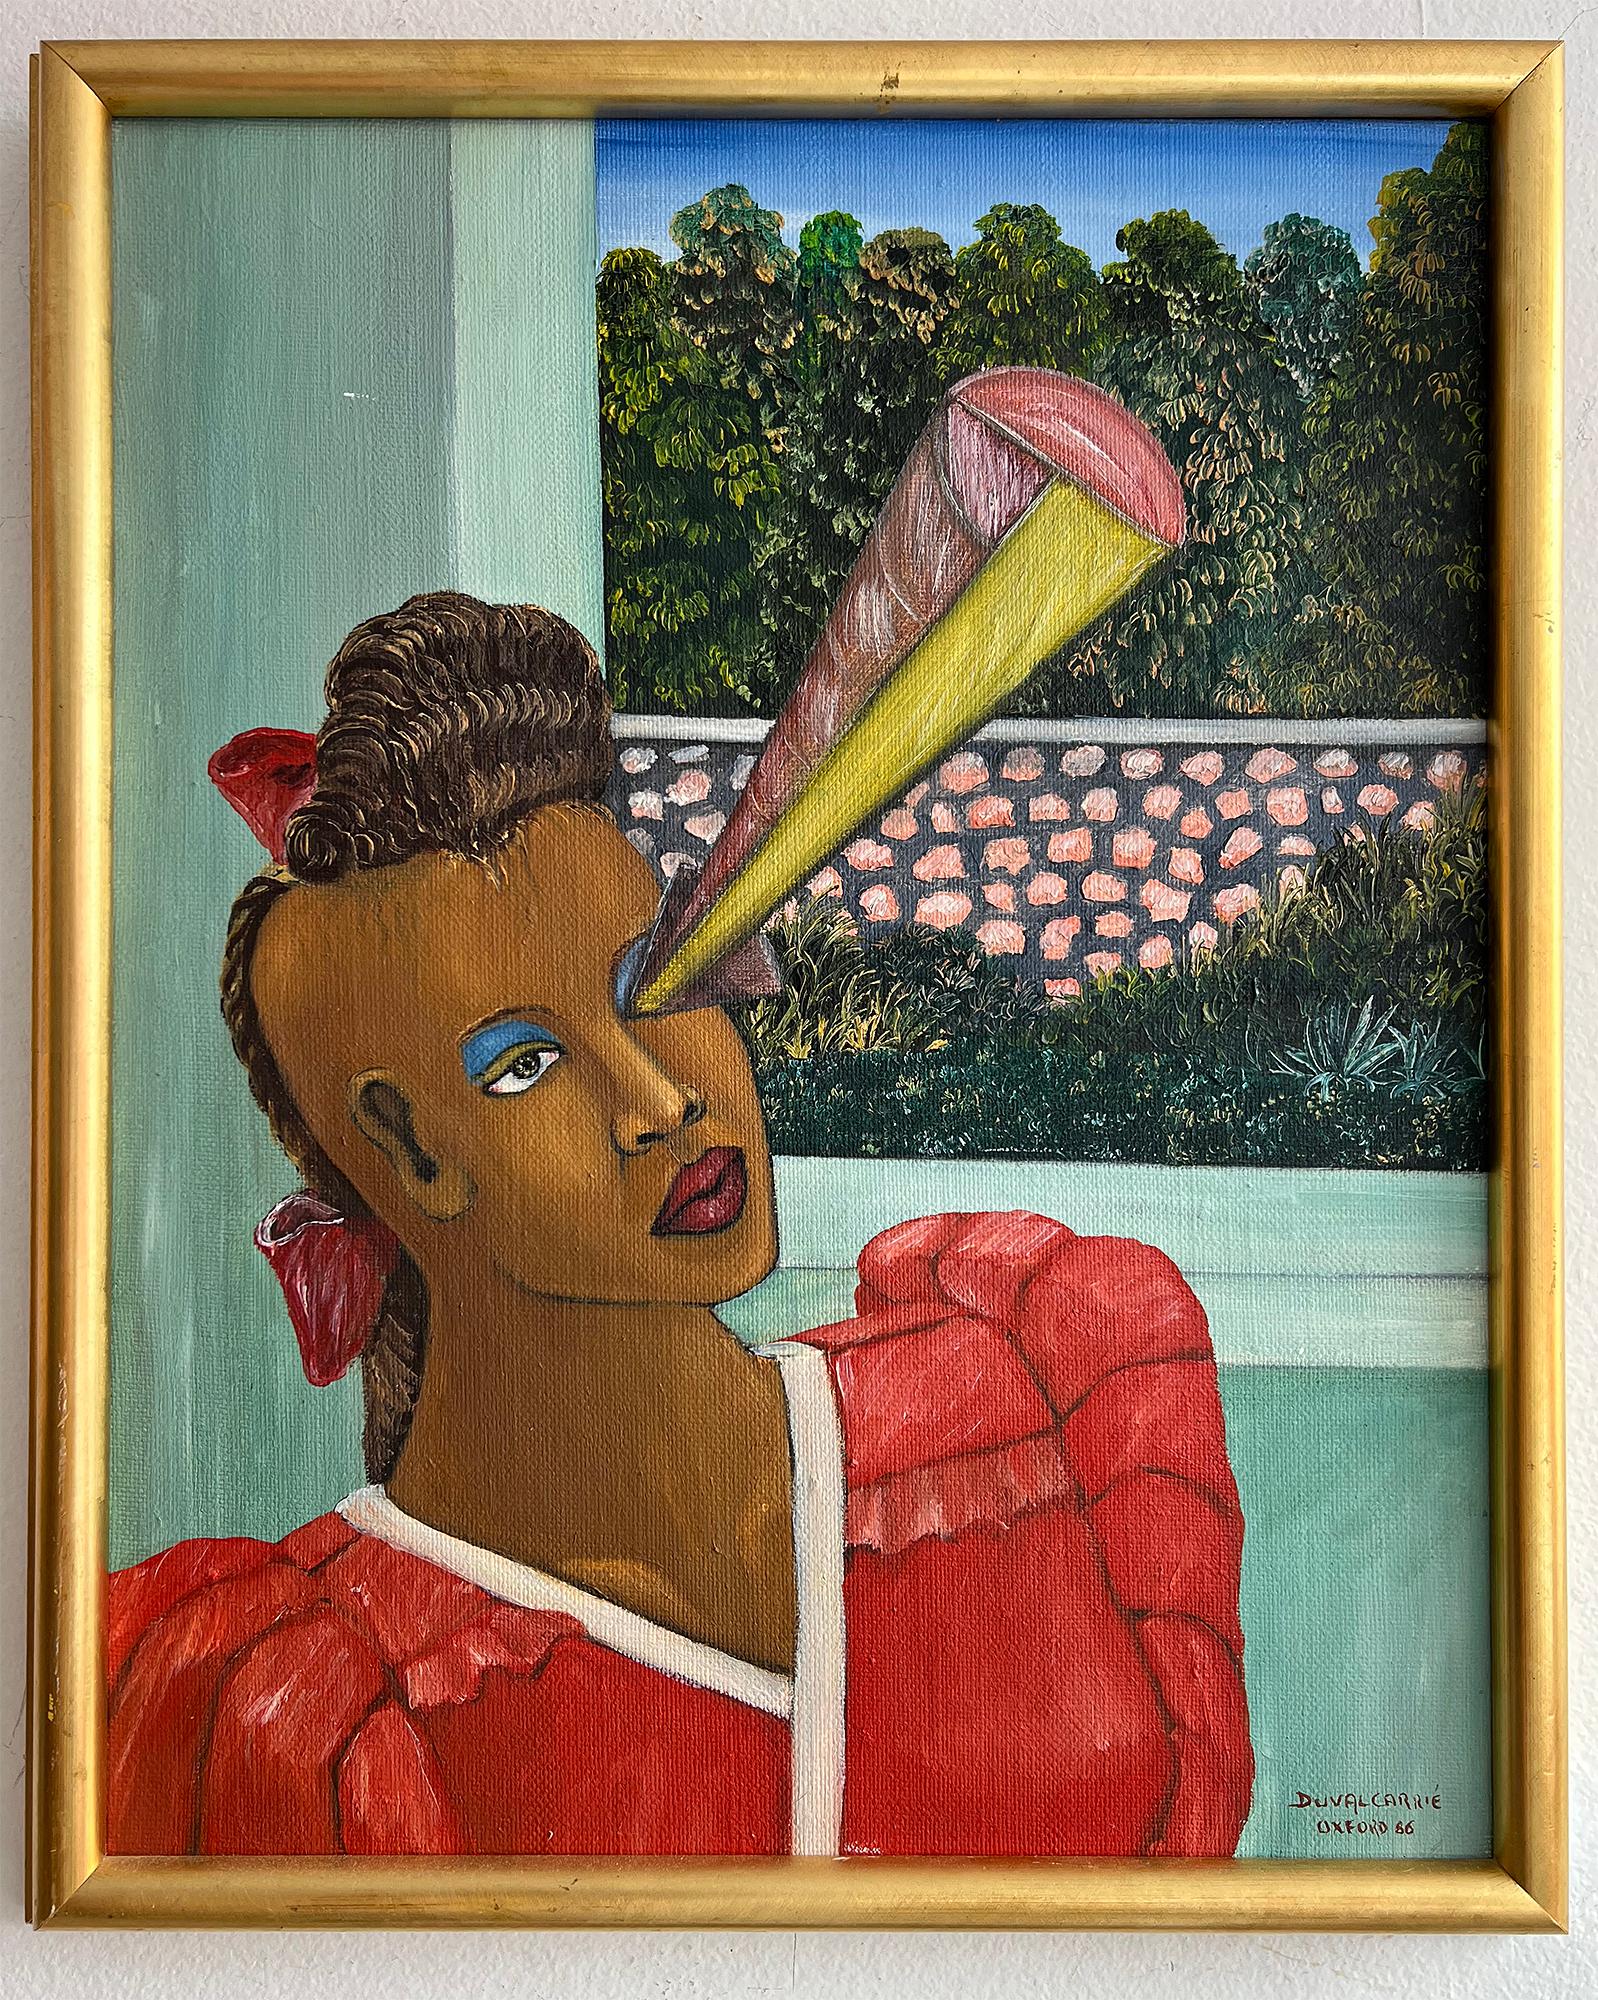 The Vision - Surreal Black Female Portrait – Painting von Edouard Duval-Carrié